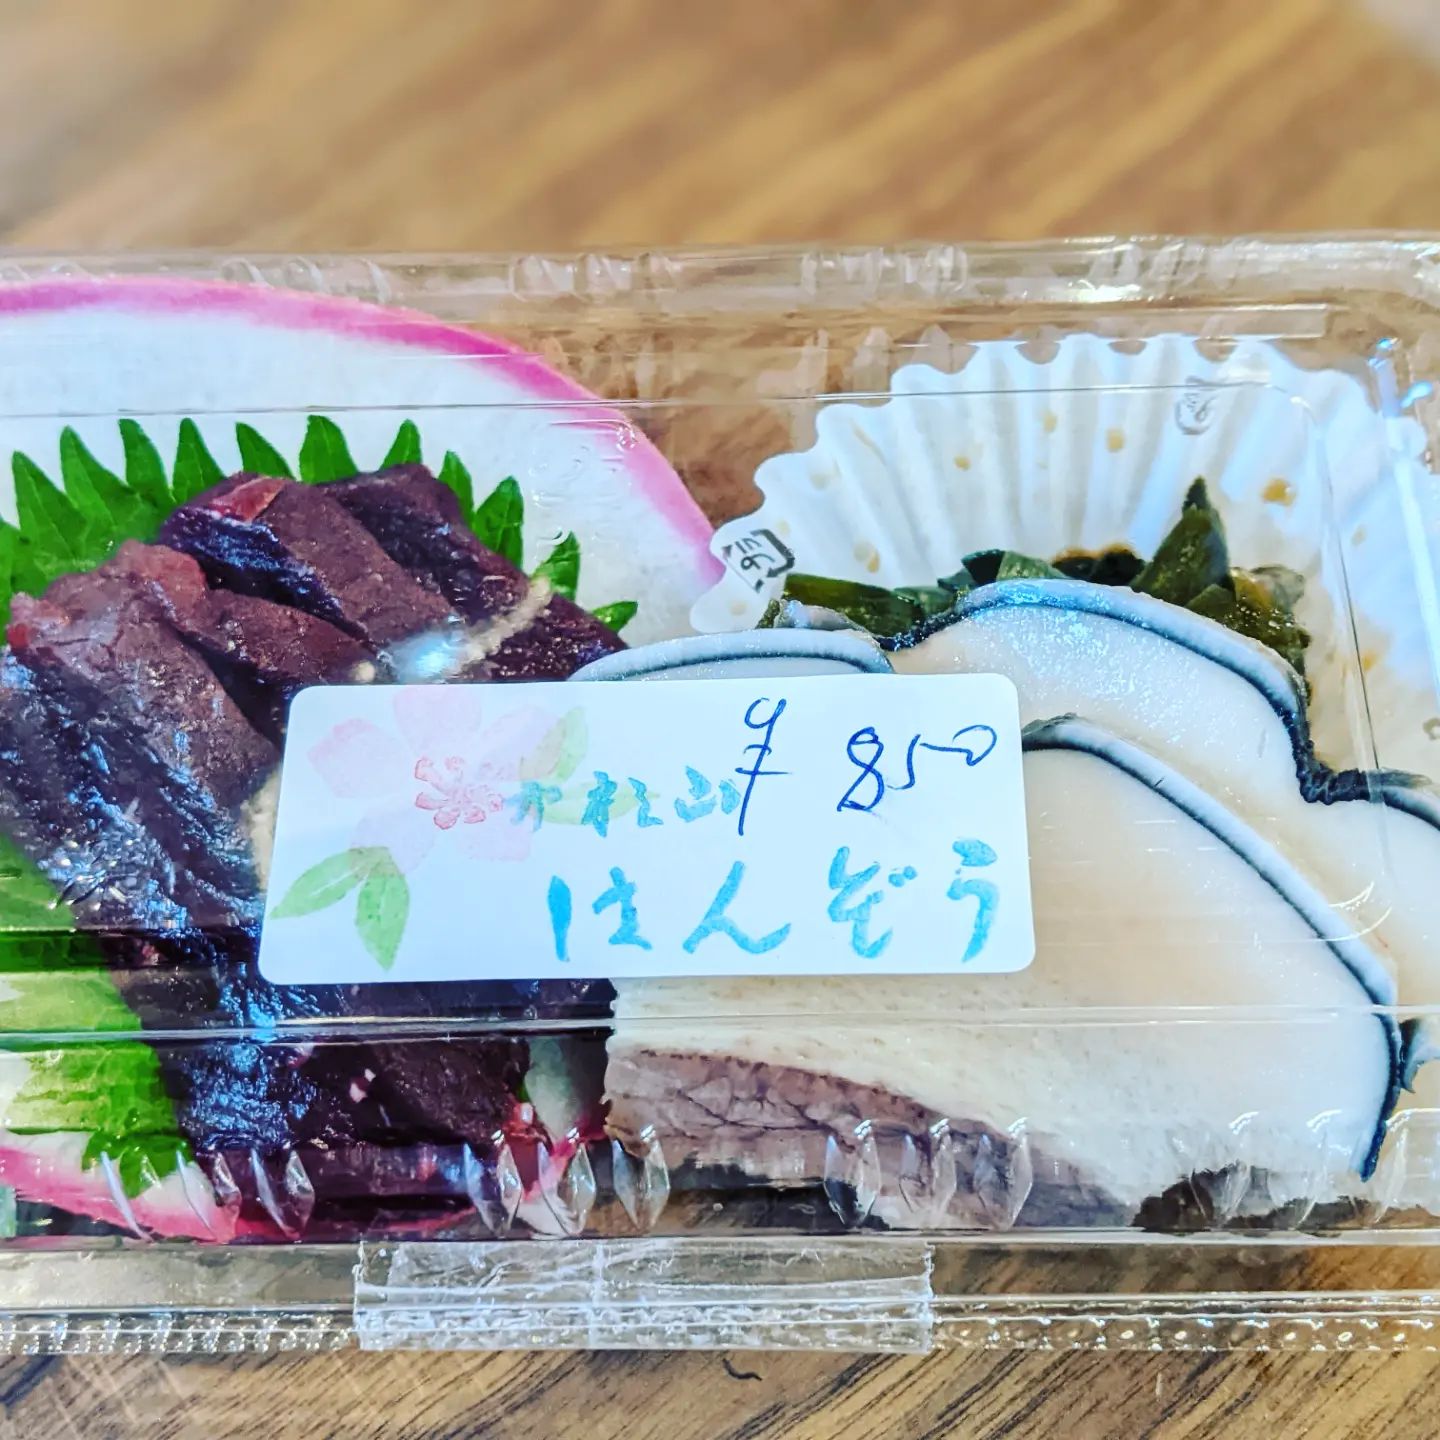 天ぷらも鯨もまだありますよ〜 (Instagram)